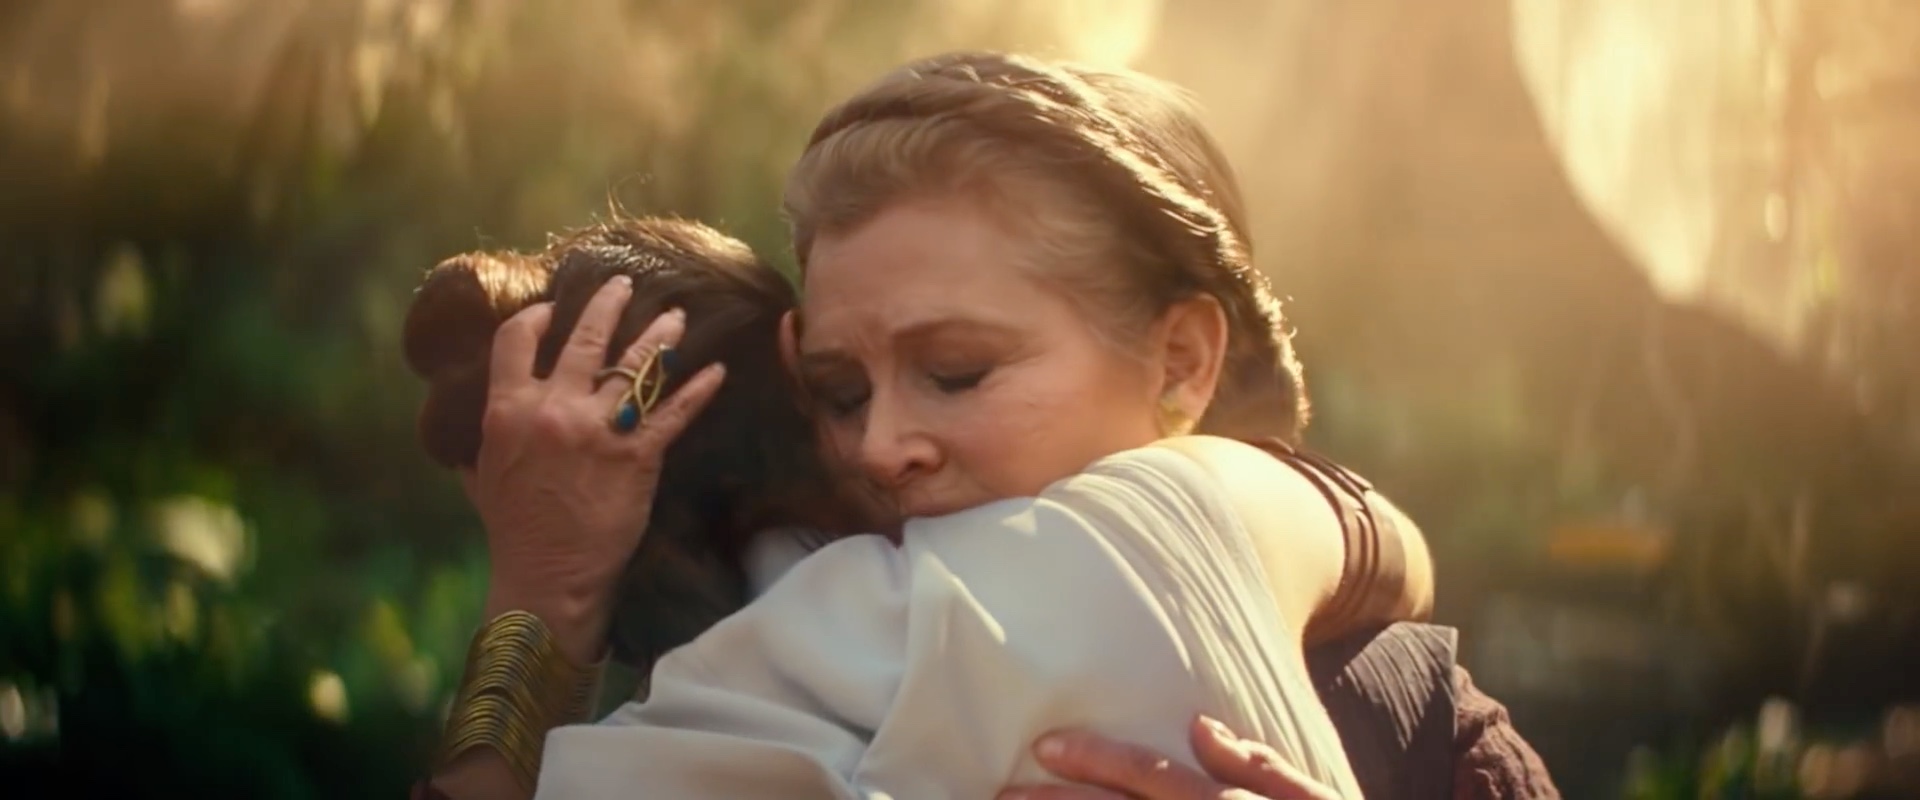 Leia embraces Rey